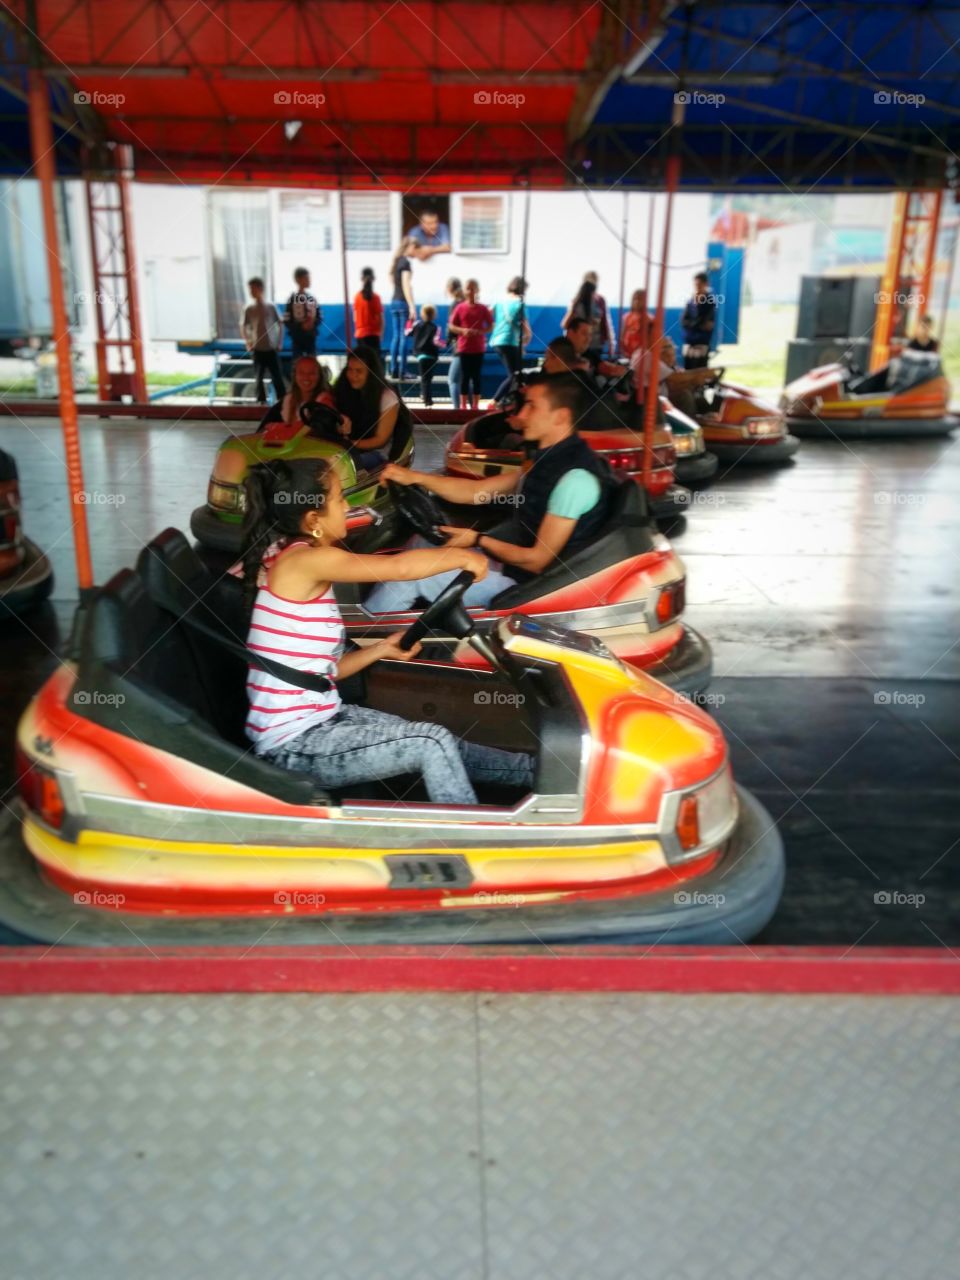 amusement park cars and kids